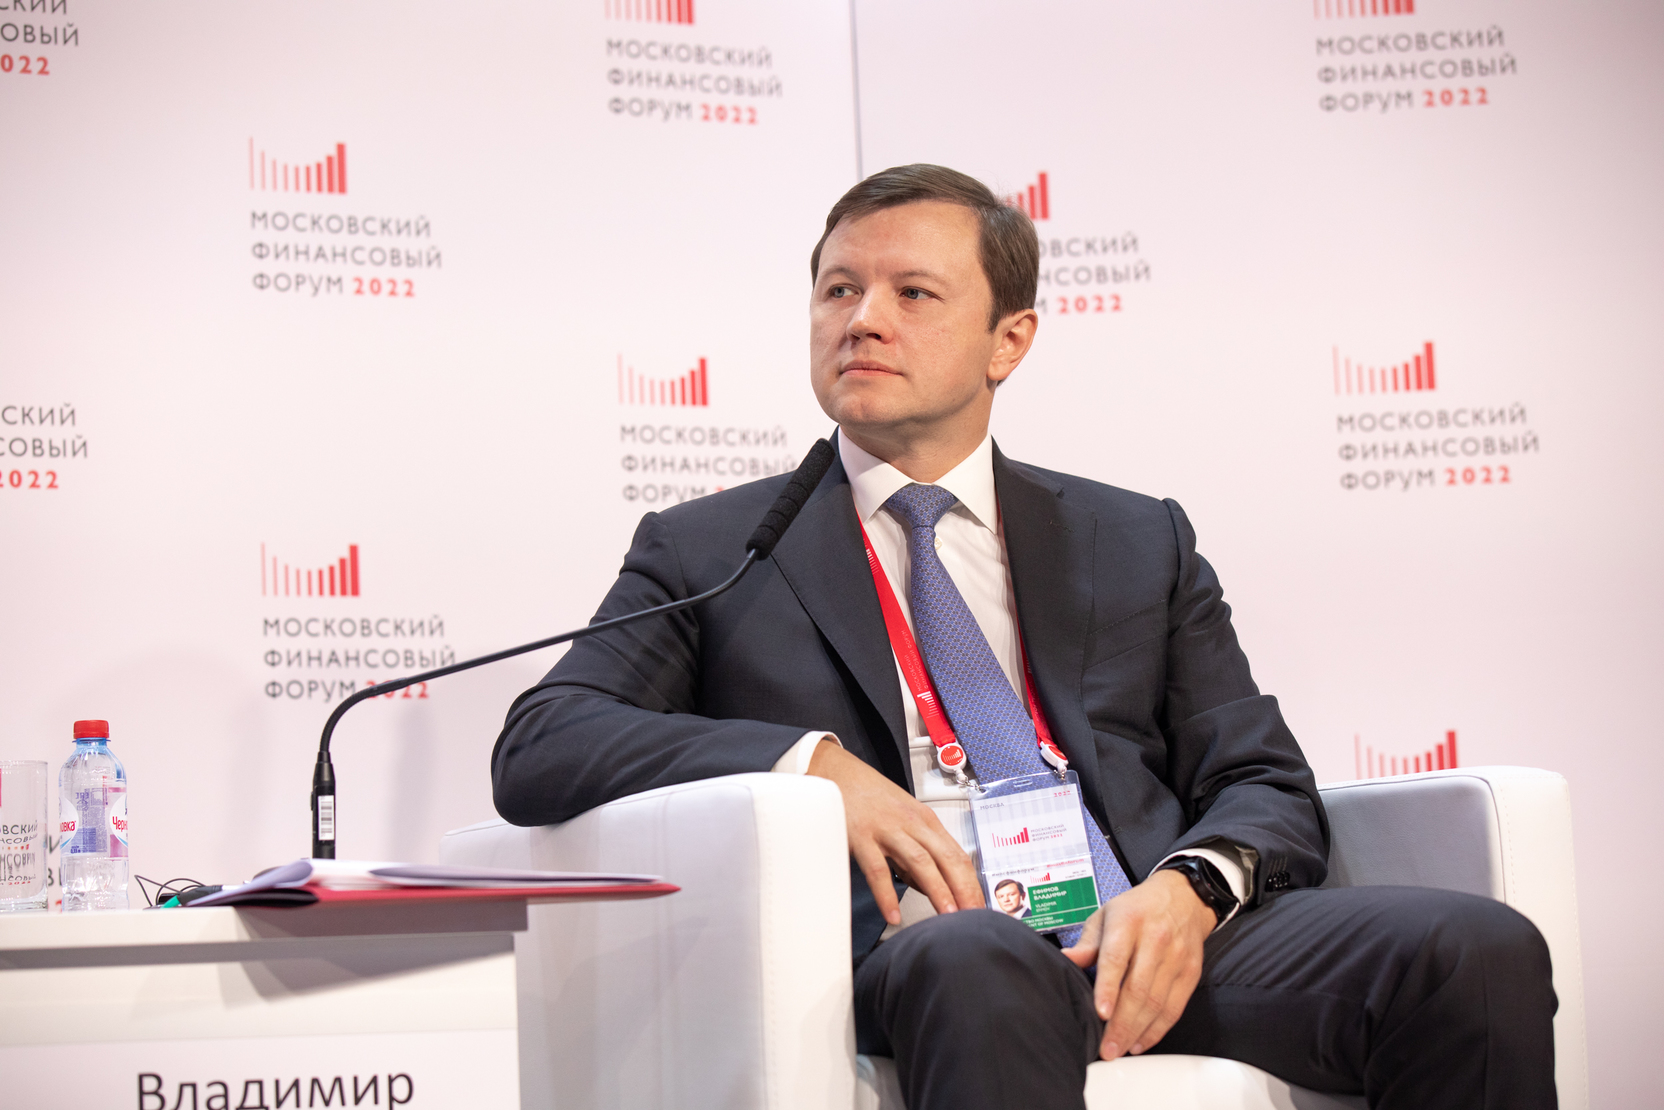 Ефимов: Девять проектов КРТ в Москве реализуют правообладатели